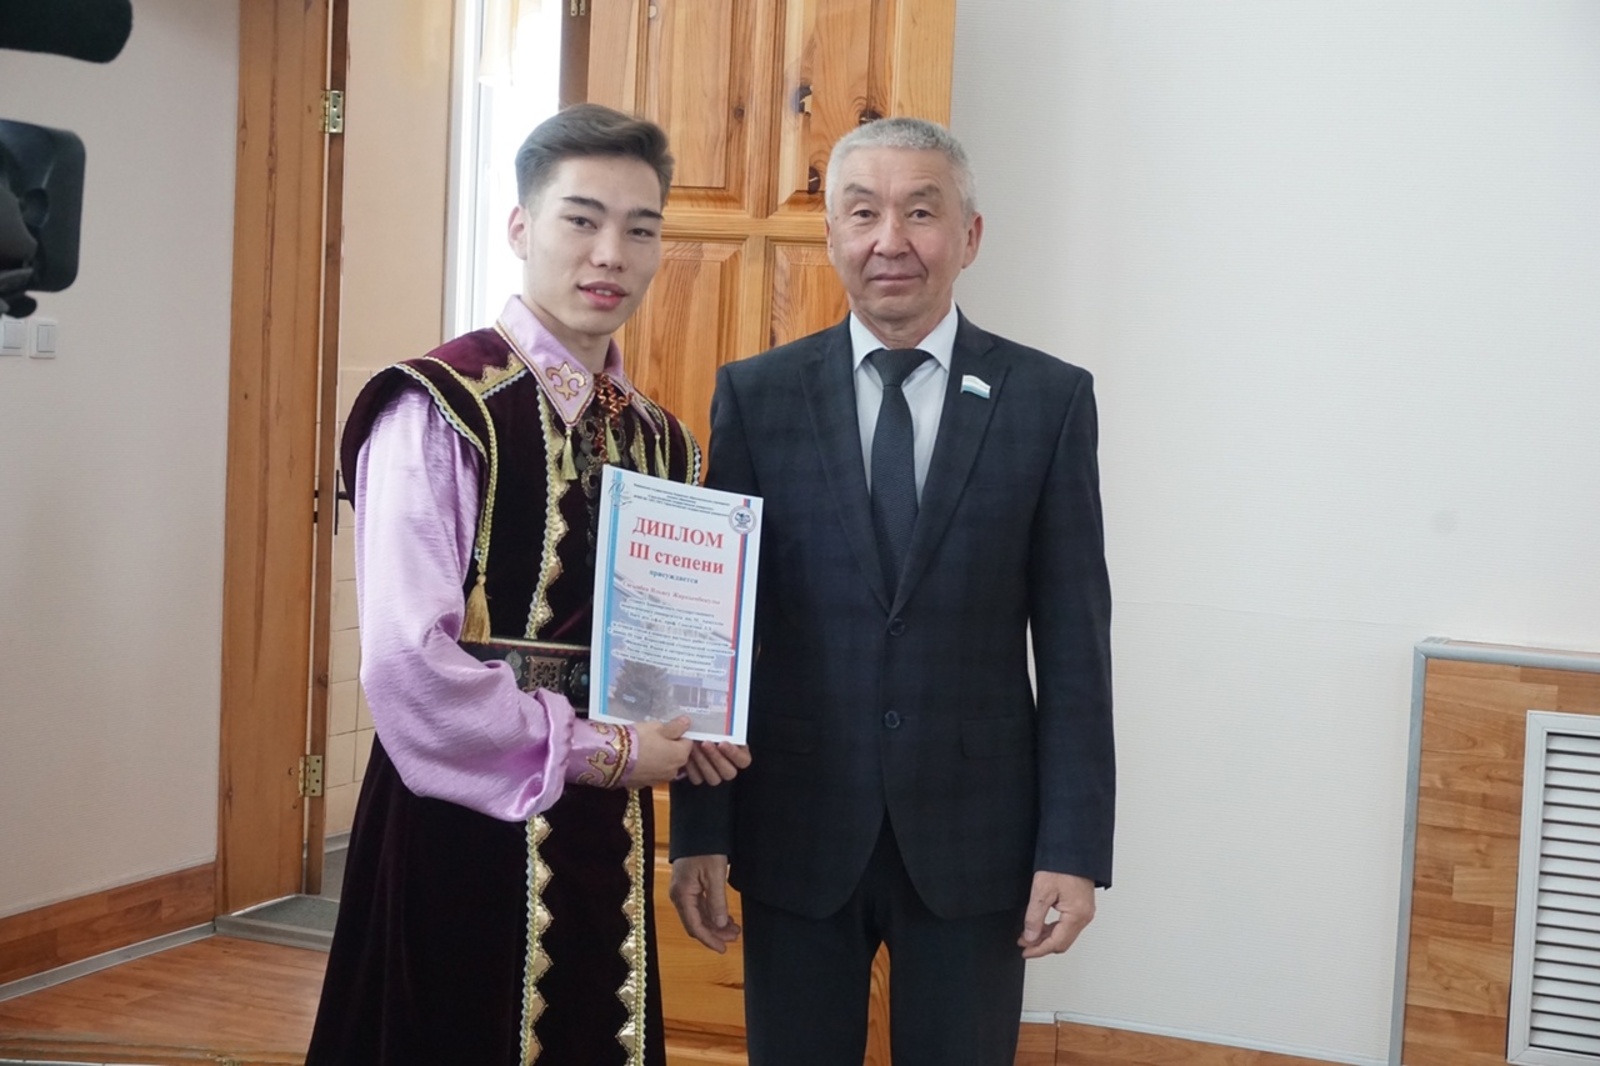 Один из лучших учителей башкирского языка в Уфе казах по национальности